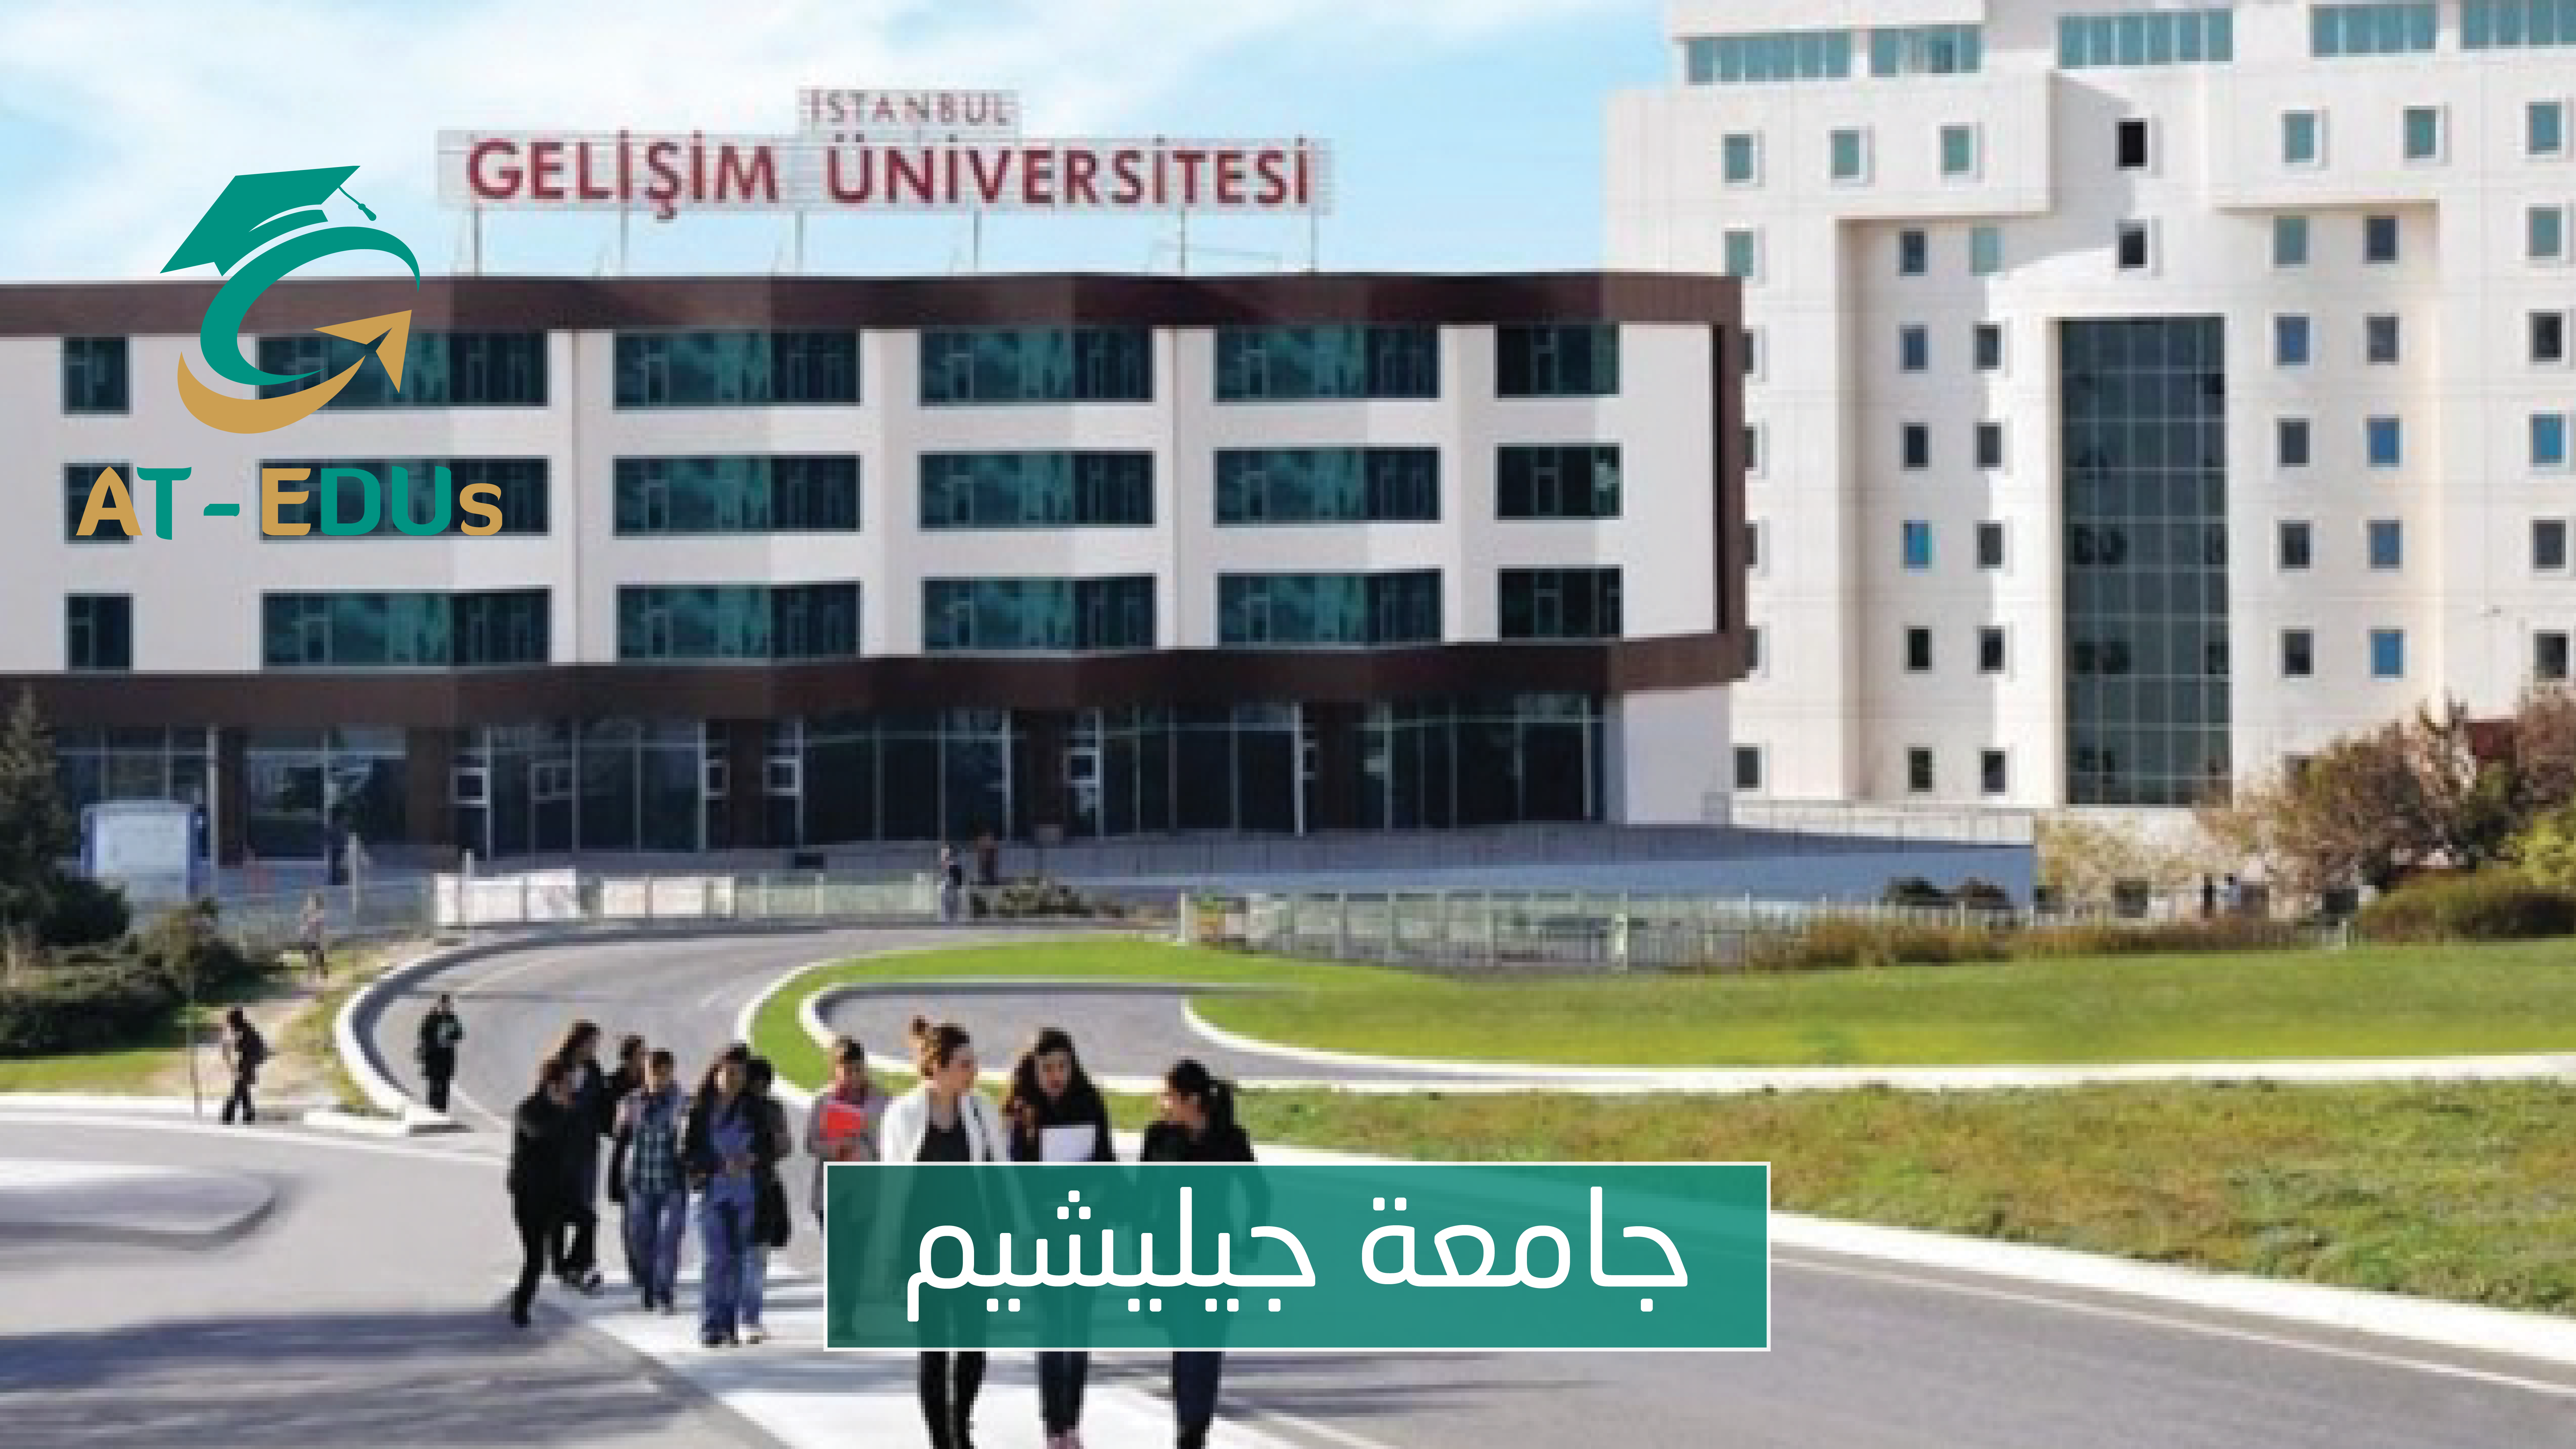 جامعة جيليشيم 2021-2022